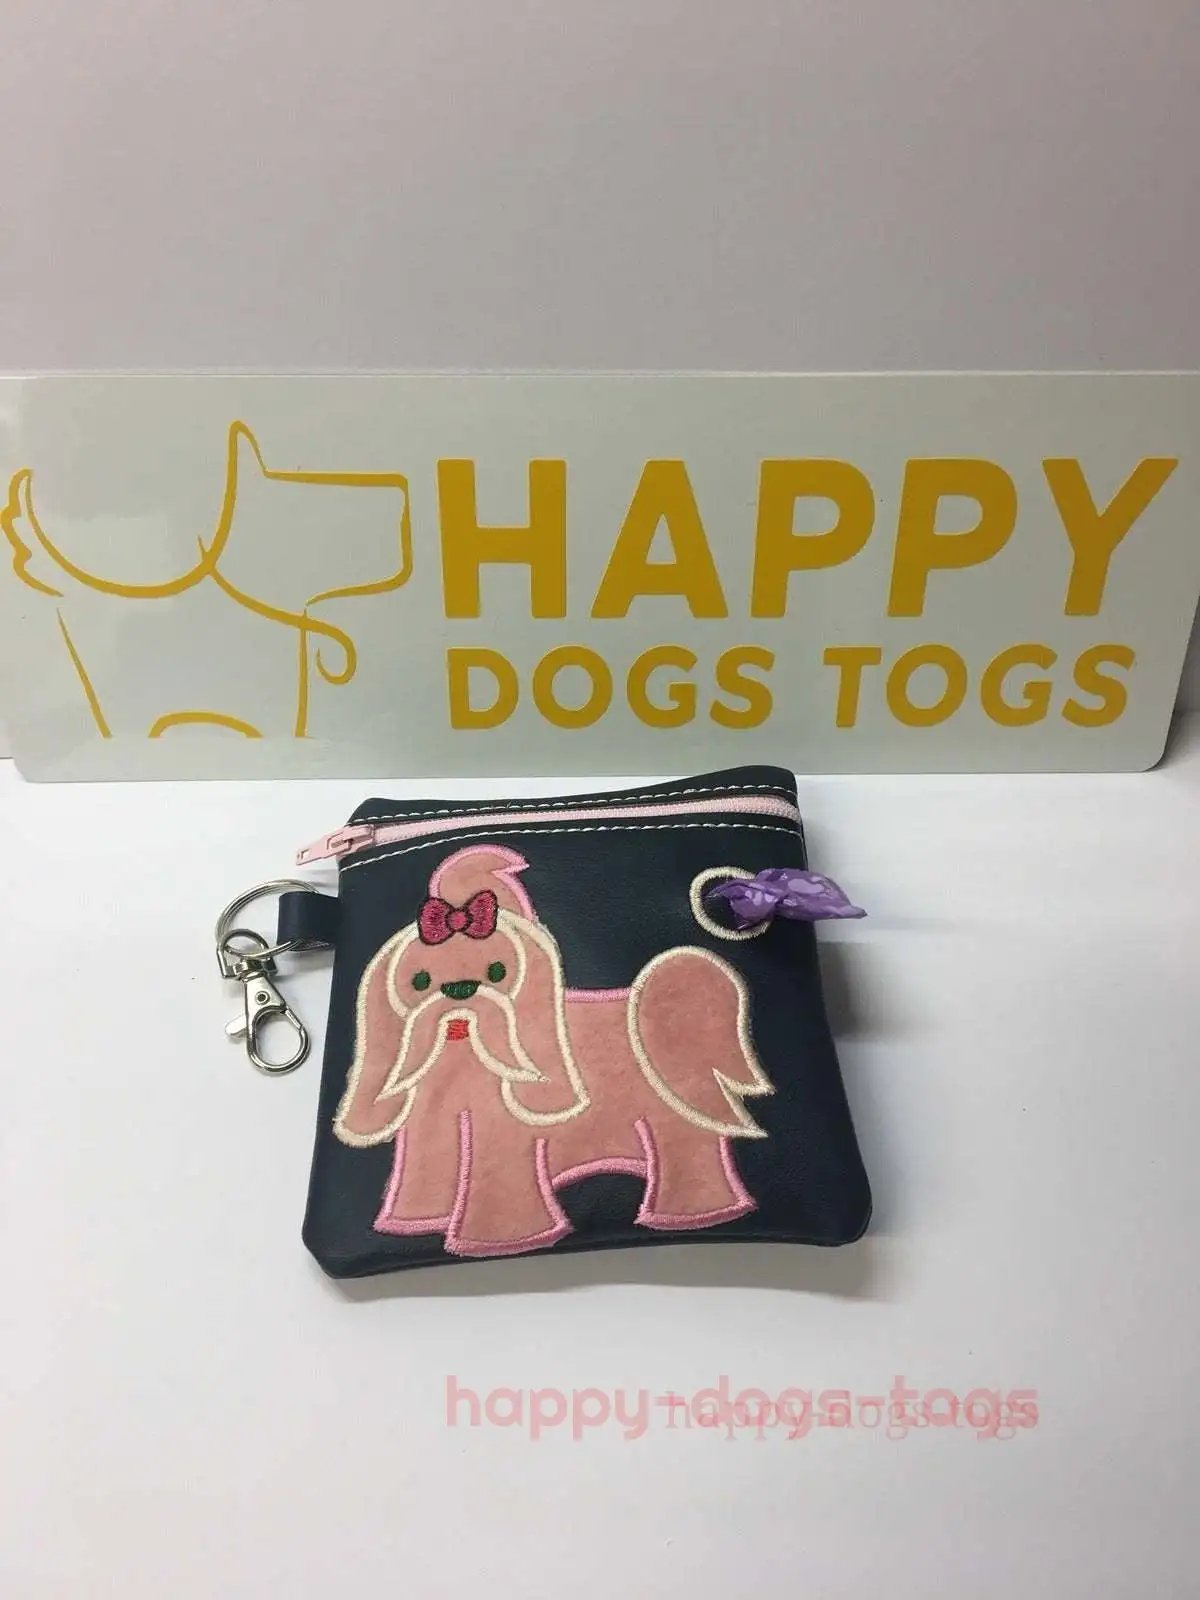 Navy Blue Shih Tsu embroidered Dog poo bag dispenser